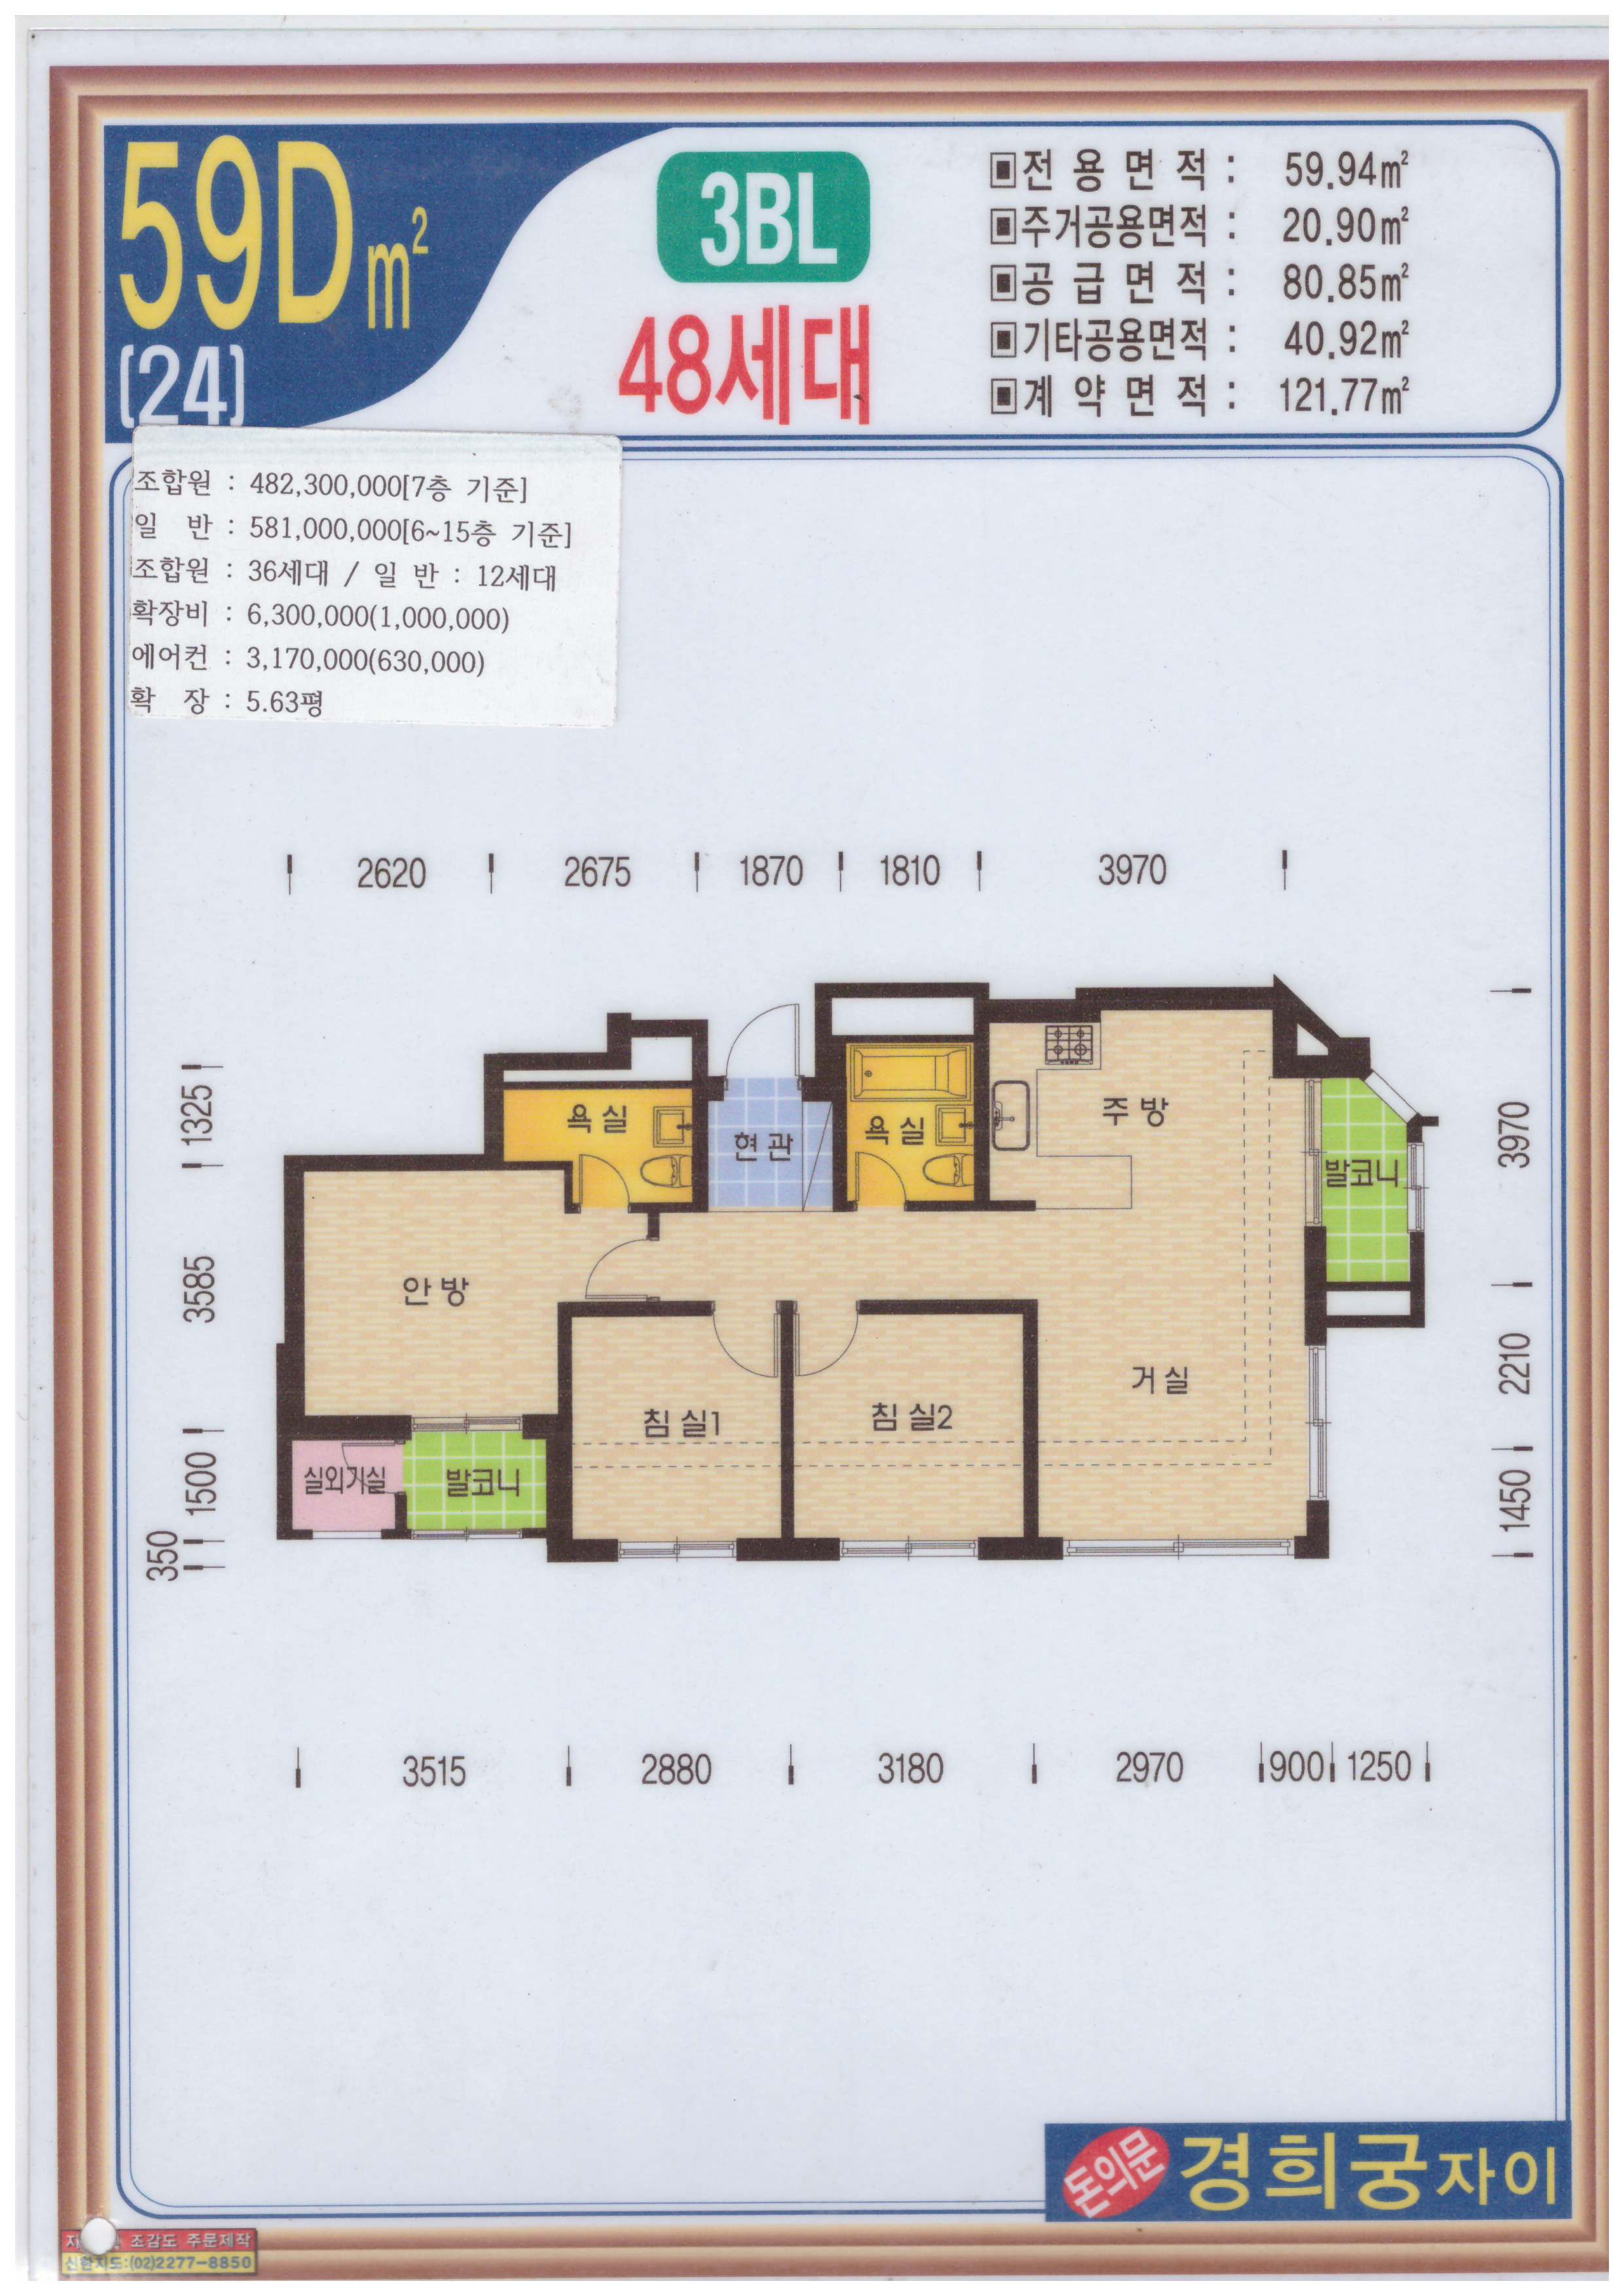 59d.jpg #경희궁자이59㎡타입 월세 : 경희궁자이매매임대전문 상경부동산